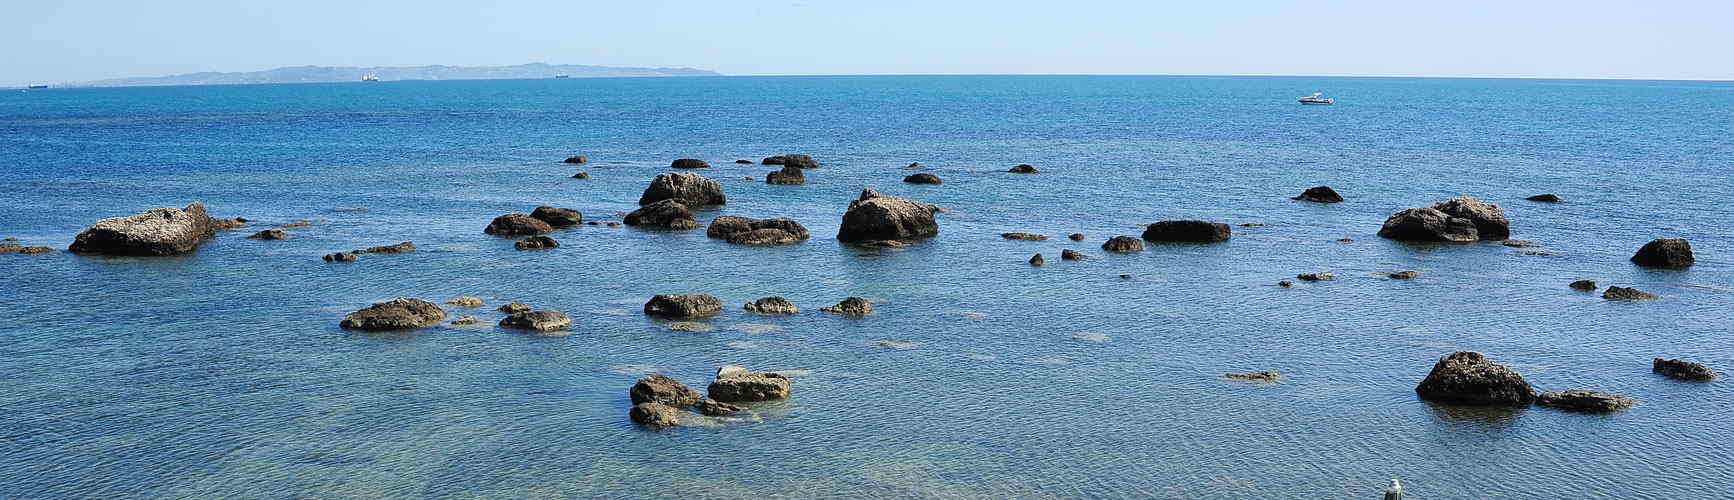 Durres, Albania: rocks in the sea